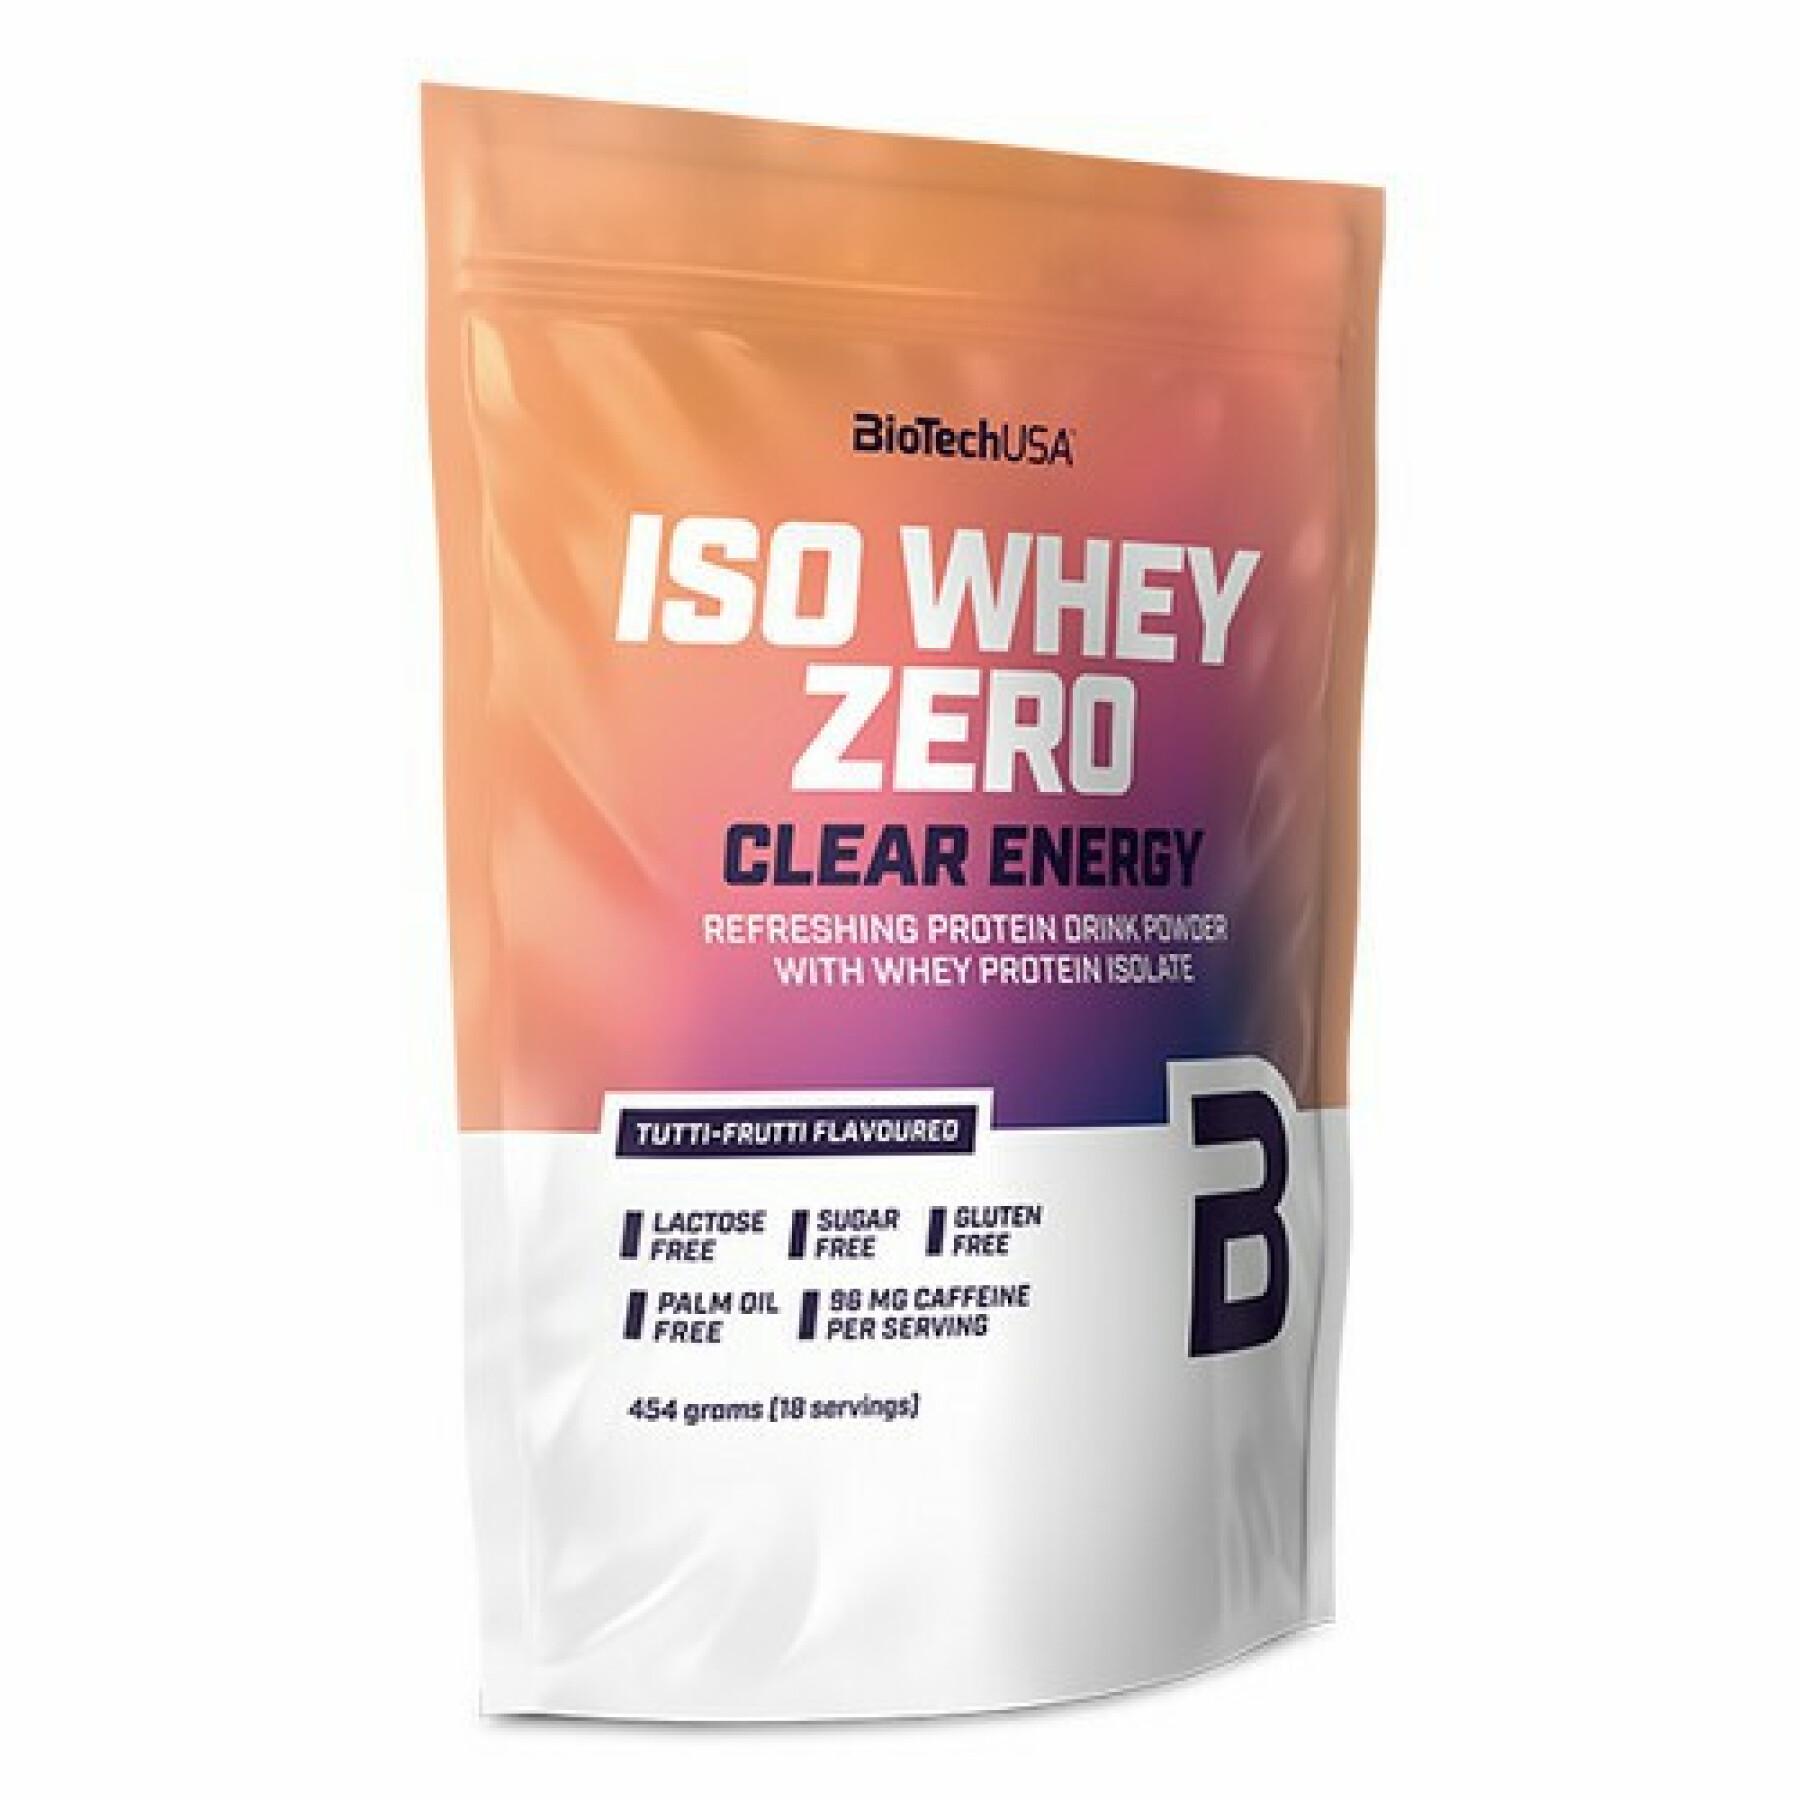 Paquete de 10 bolsas de proteínas Biotech USA iso whey zero clear energy - Tutti-frutti - 454g